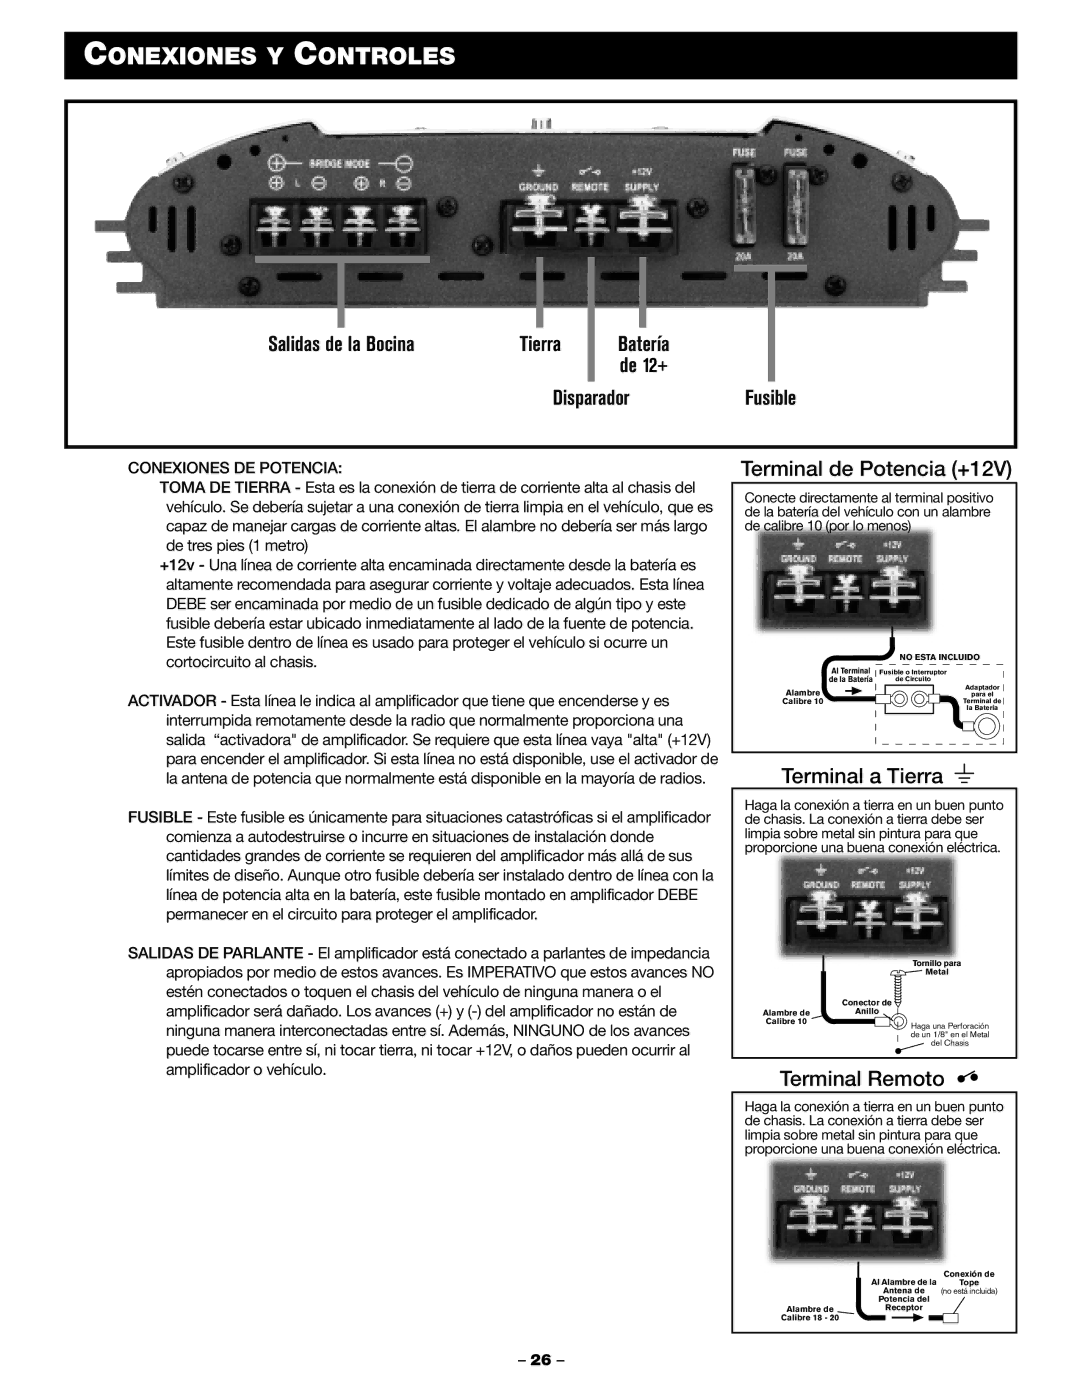 Blaupunkt PCA 2100, PCA 250 manual Conexiones Y Controles, Salidas de la Bocina, DisparadorFusible, Conexiones DE Potencia 